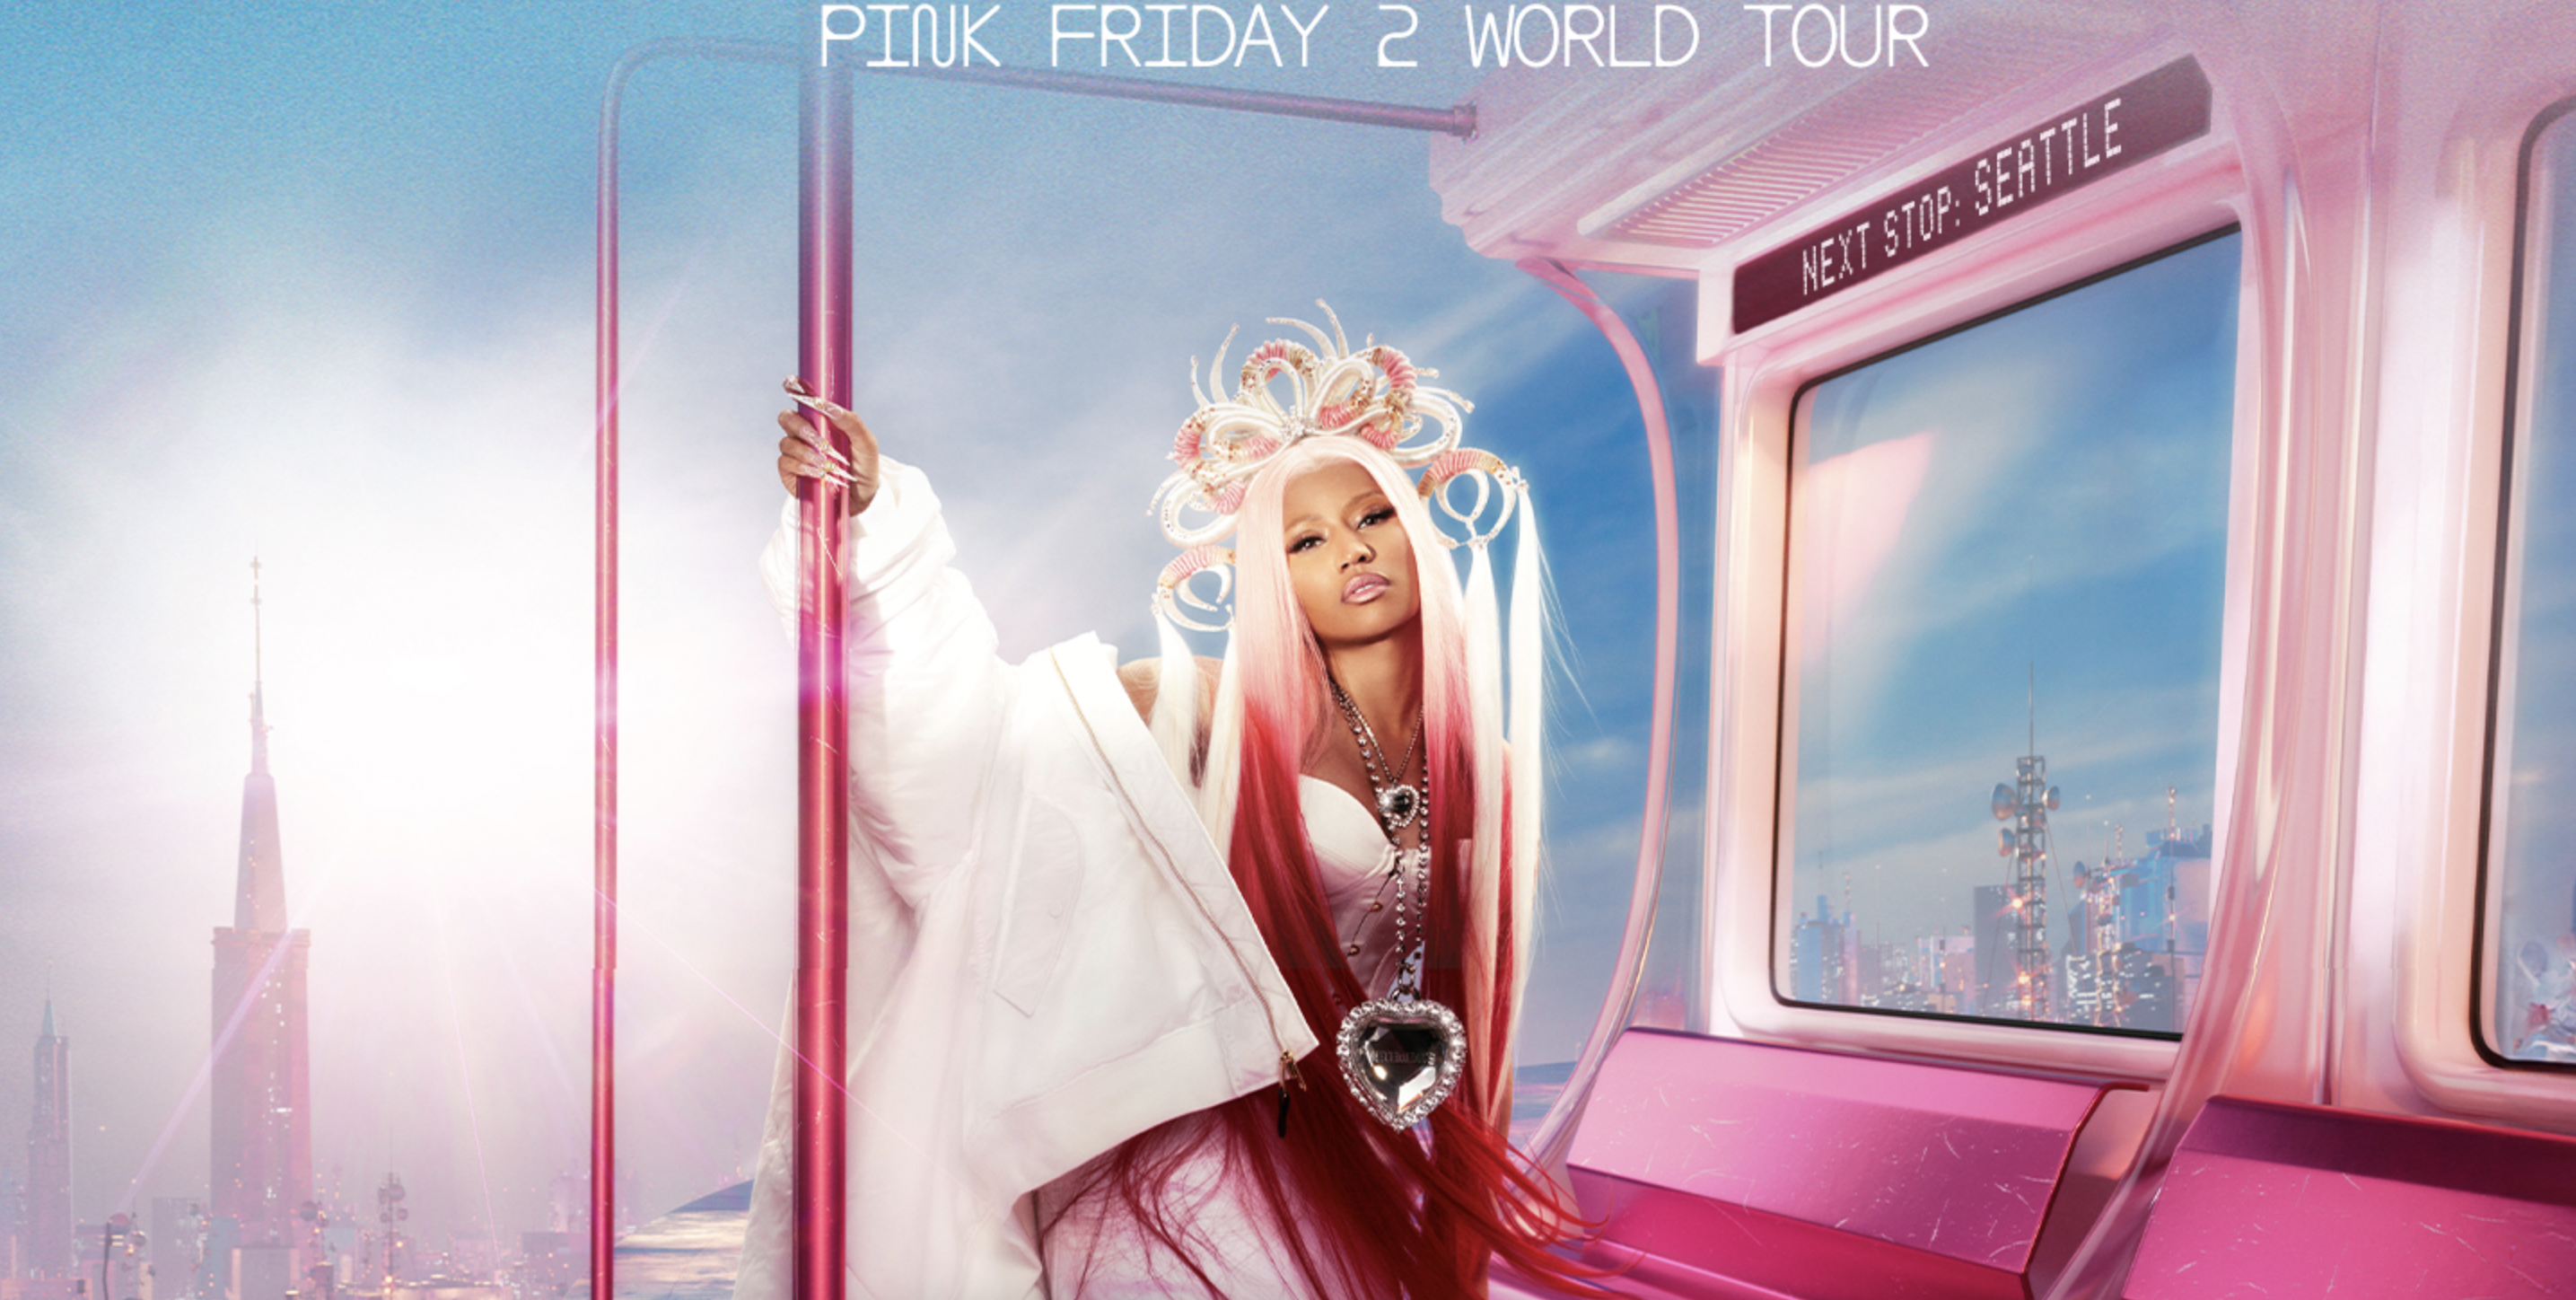 The promotional tour of Nicki Minaj getting off on Gag City in Seattle, Washington.